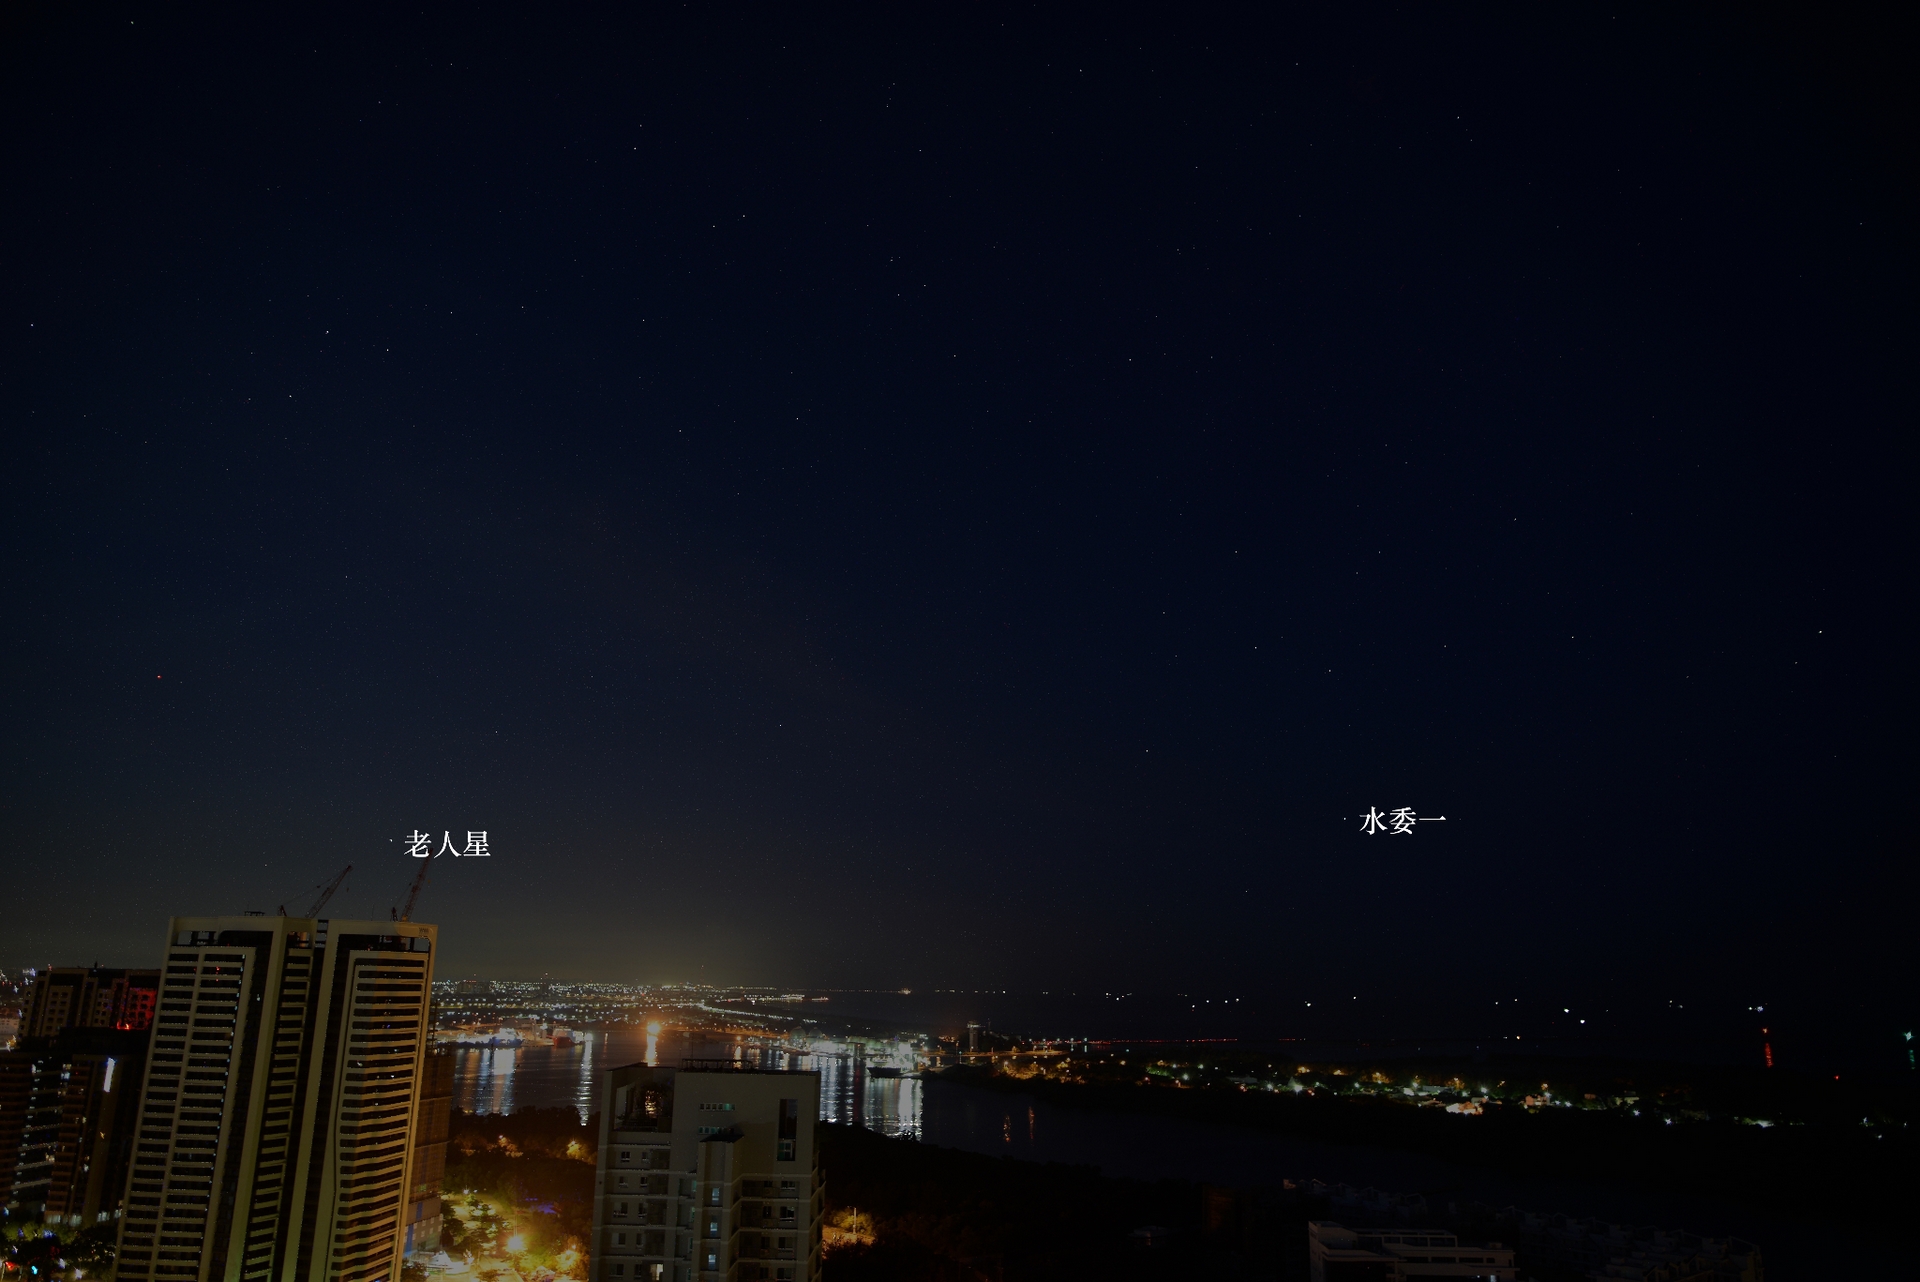 老人星的緯度相當低，臺灣可以在南方地平線上看見這顆亮星。2023/8/29清晨，李昫岱攝於臺南。